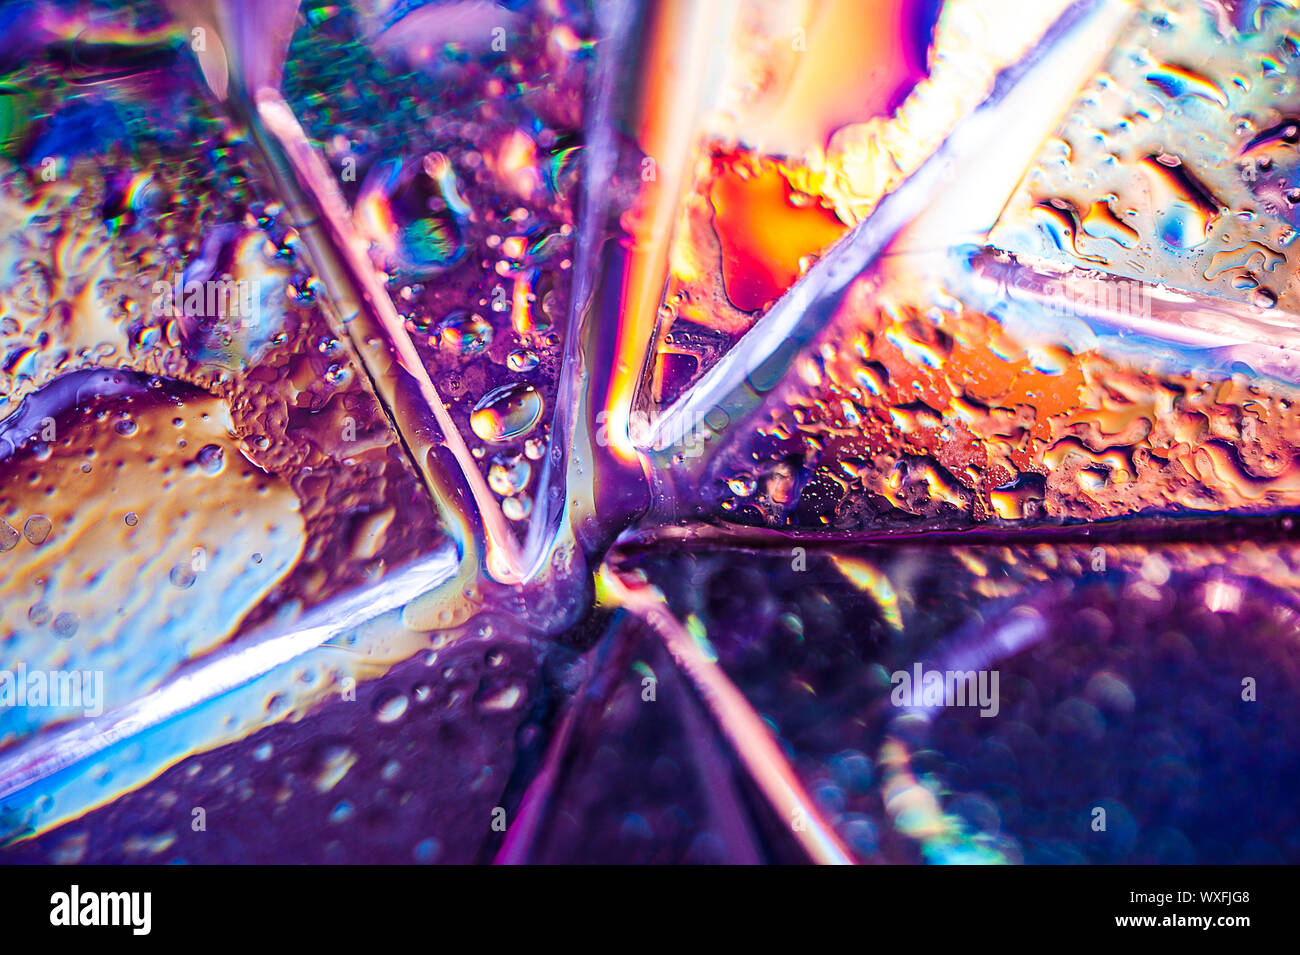 Hintergrund im Stil der 80-90 Jahre. Echten Textur von Glasscherben oder Eis und Tropfen in hellen Säure Farben. Stockfoto